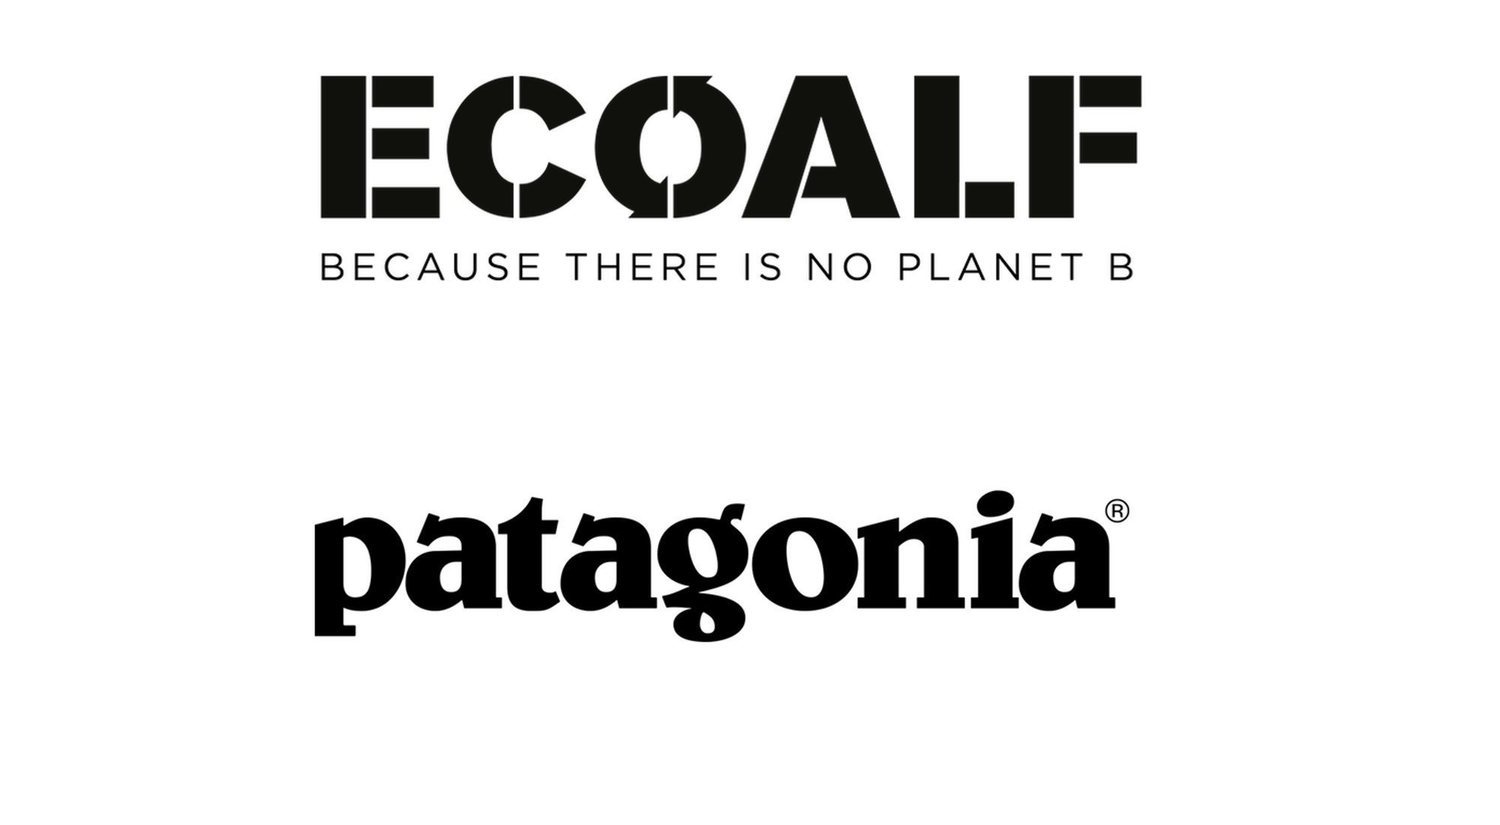 Patagonia y Ecoalf, referencias de la moda sostenible